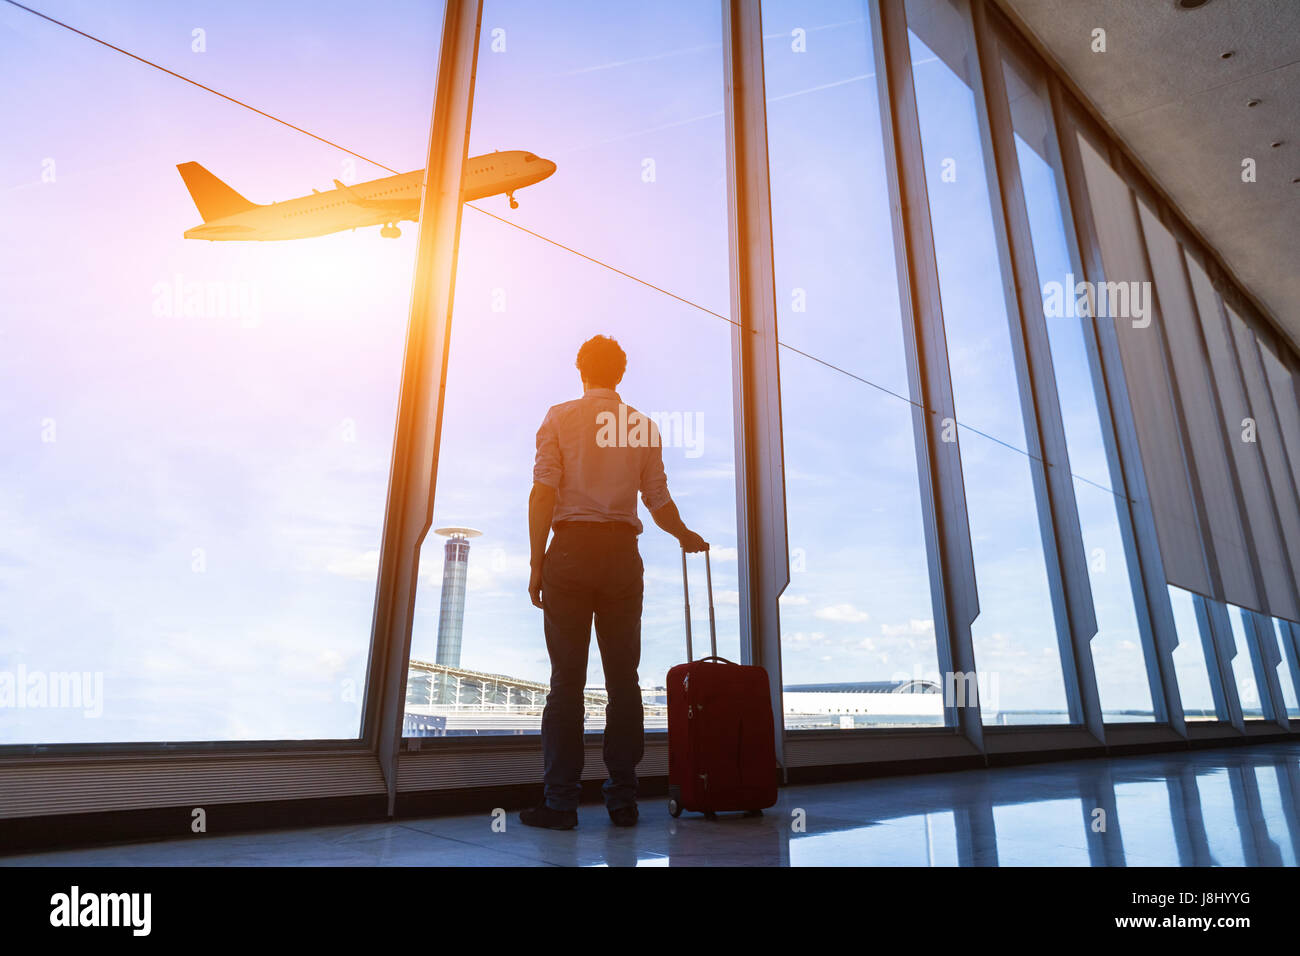 Businessman with suitcase à aéroport Aéroport international d'embarquement à l'avion à voler à travers les fenêtres Banque D'Images